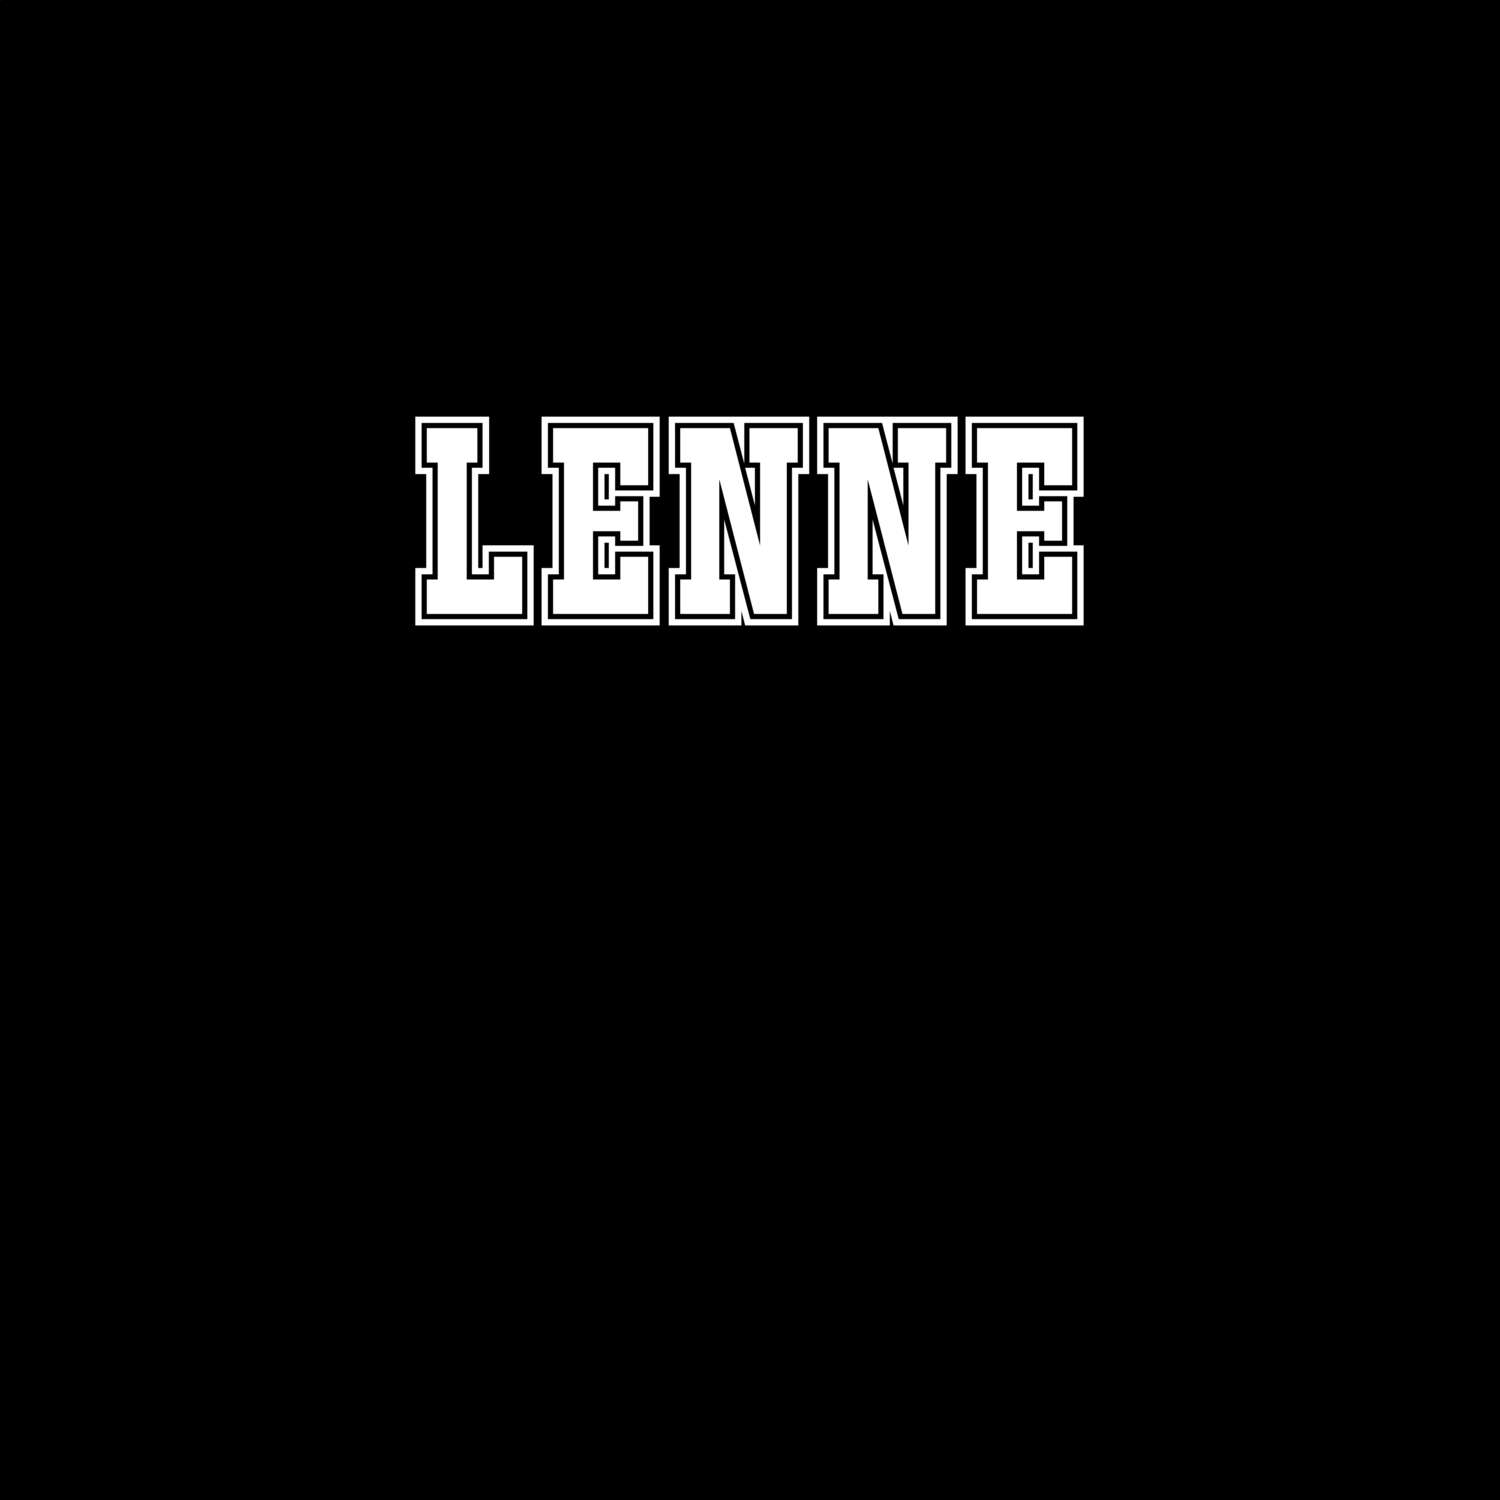 Lenne T-Shirt »Classic«